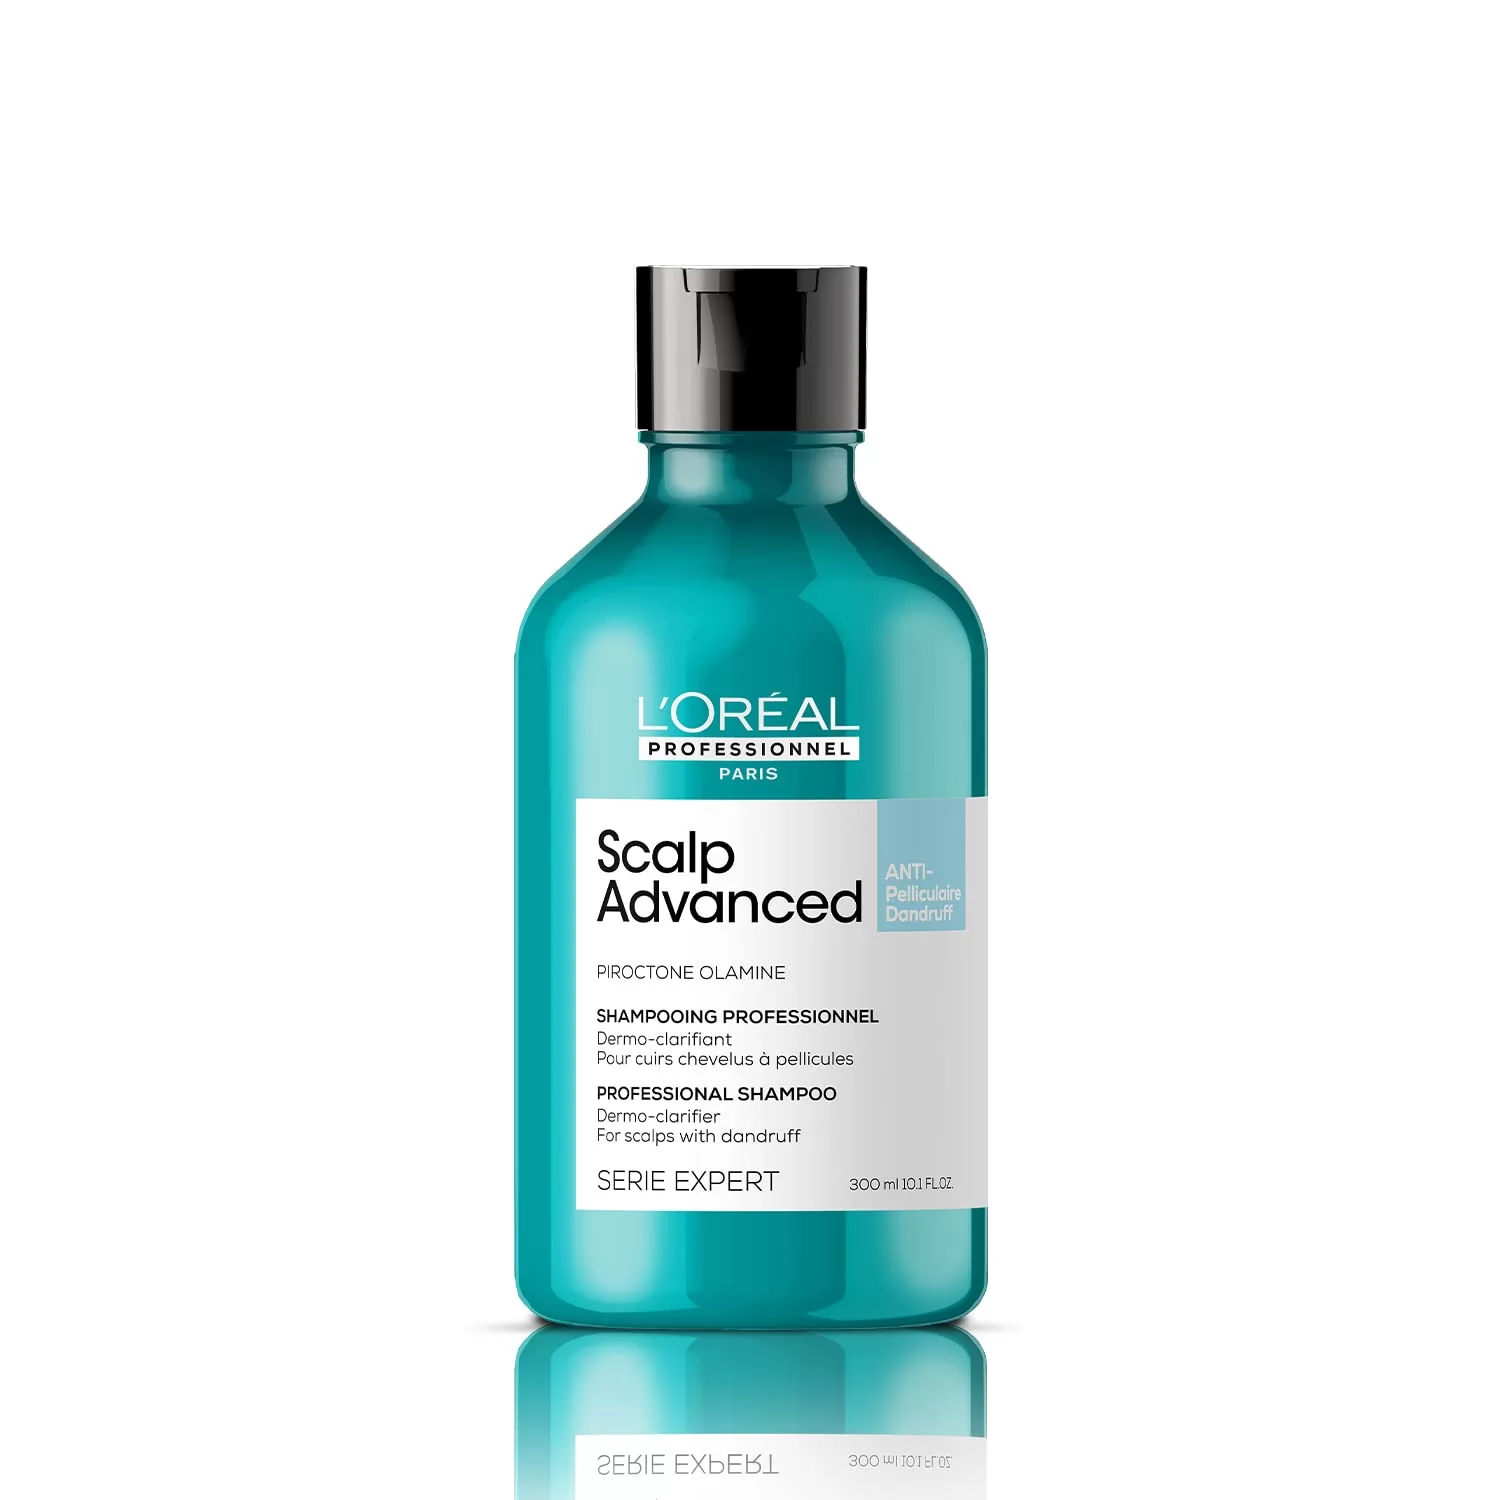 L’Oréal Professionnel Scalp Advanced Anti-Dandruff Dermo-Clarifier Shampoo